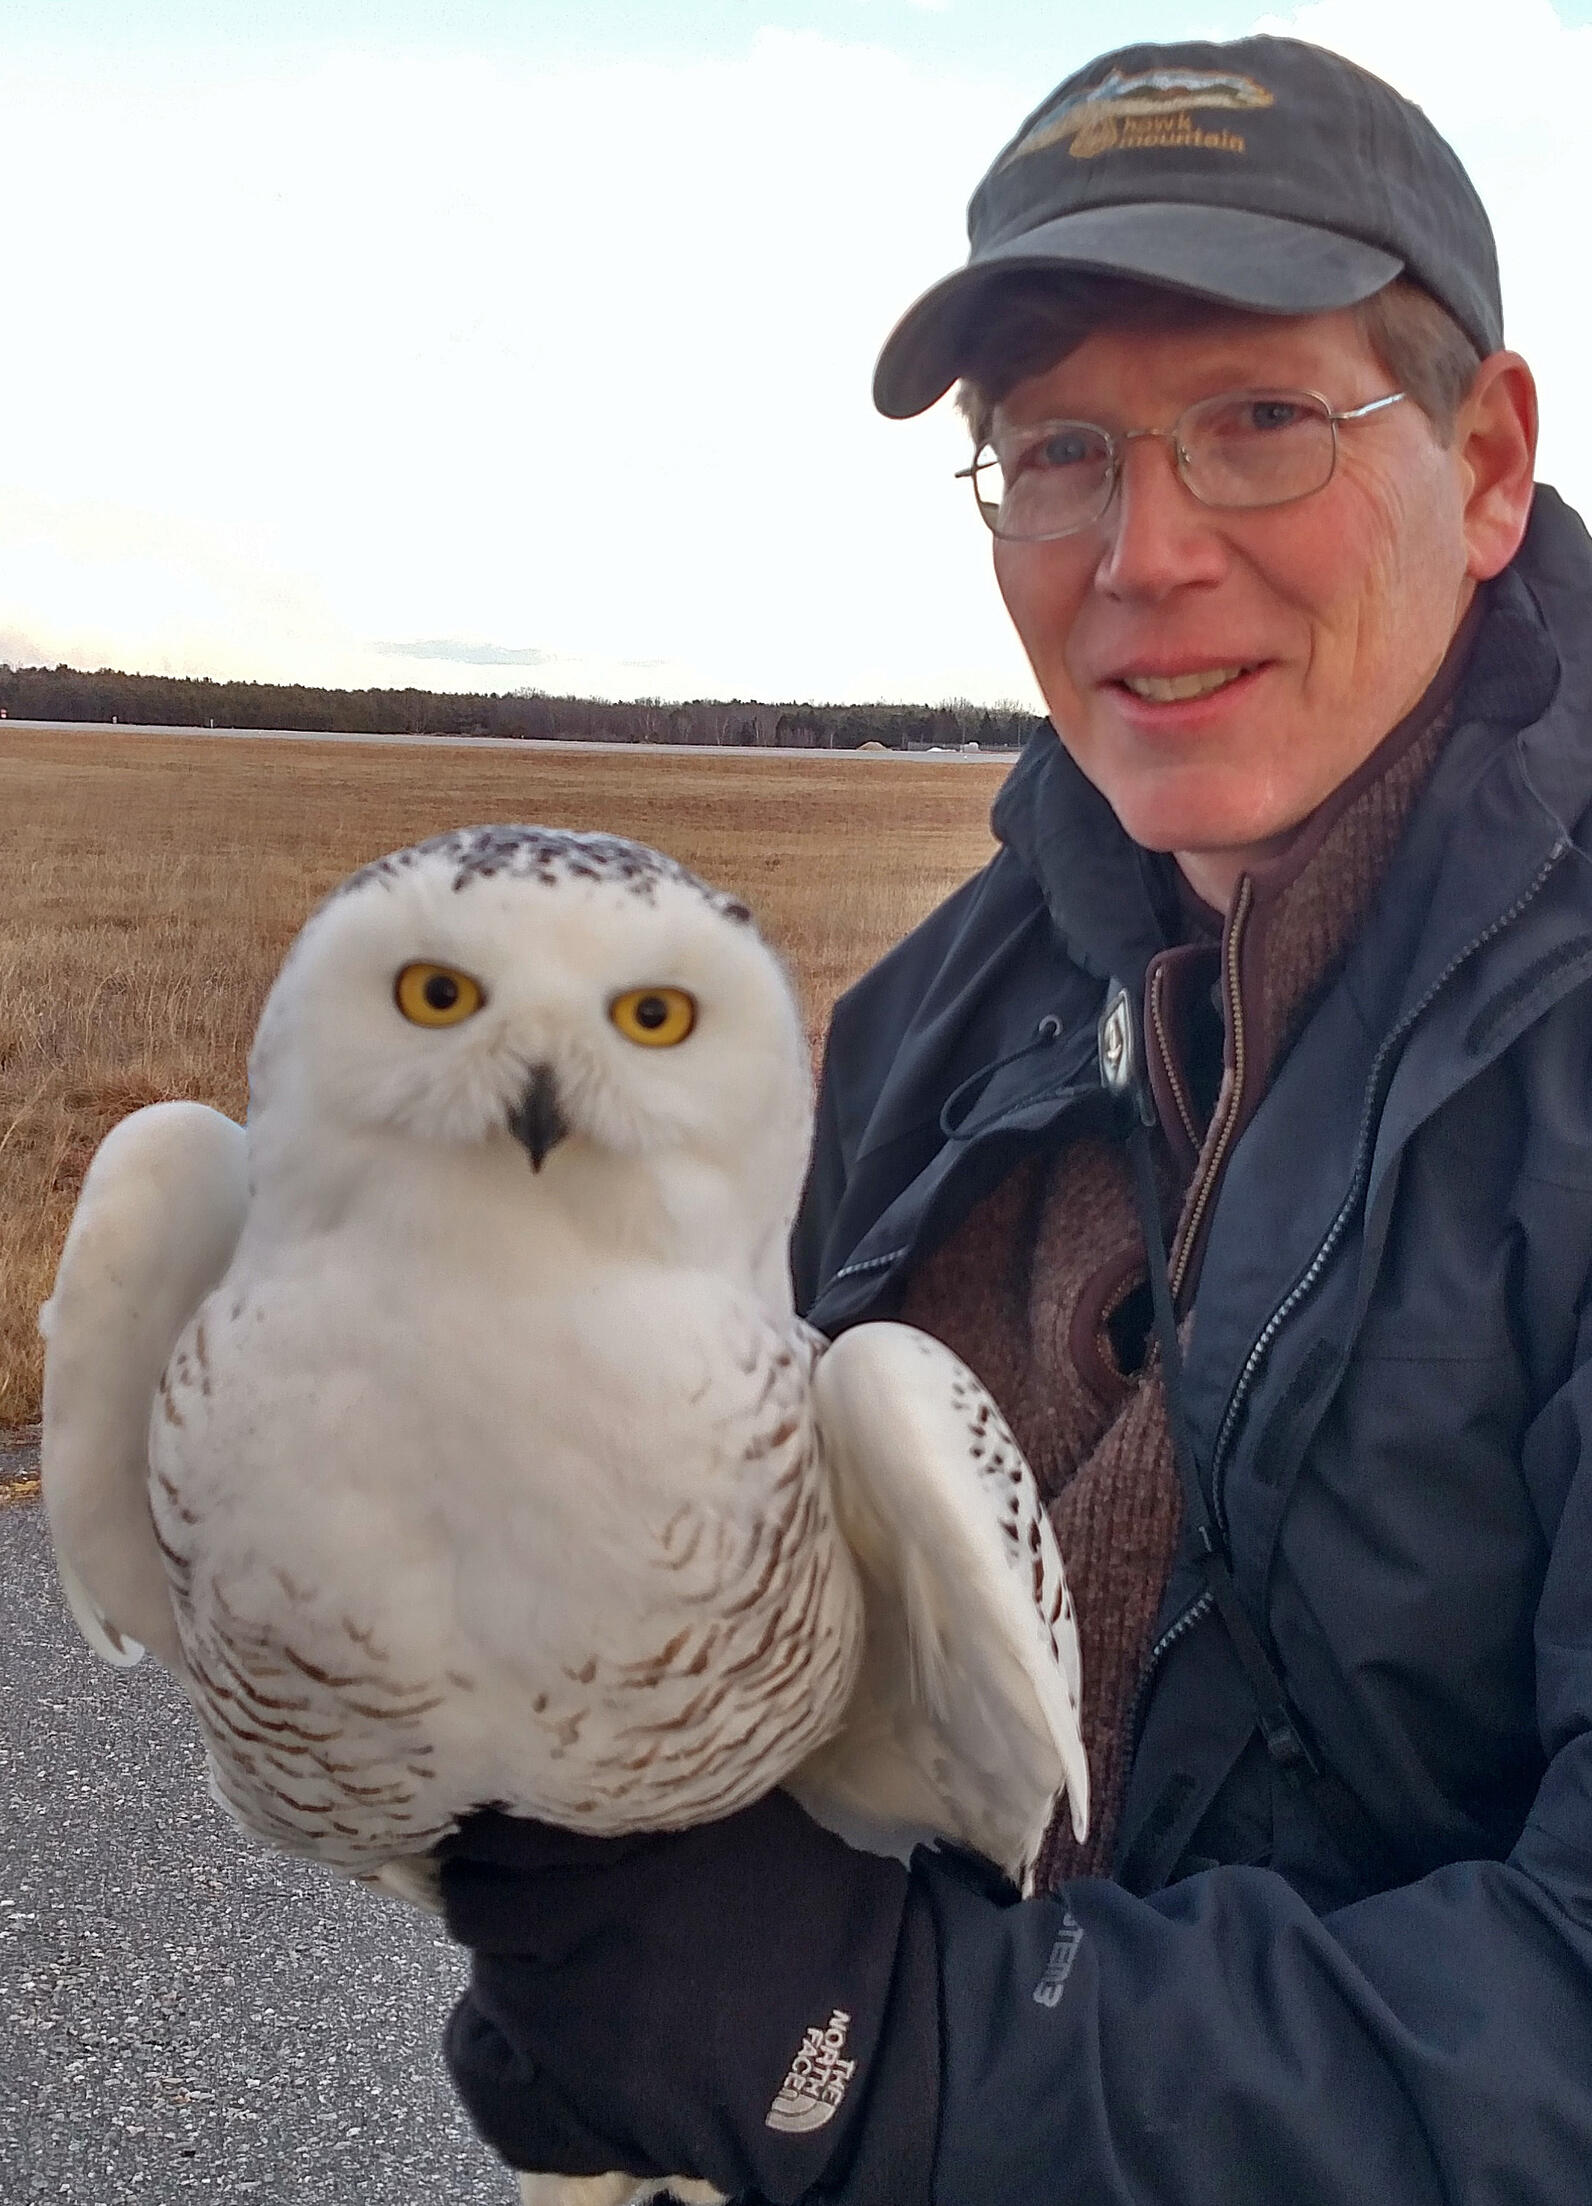 Man holding white owl